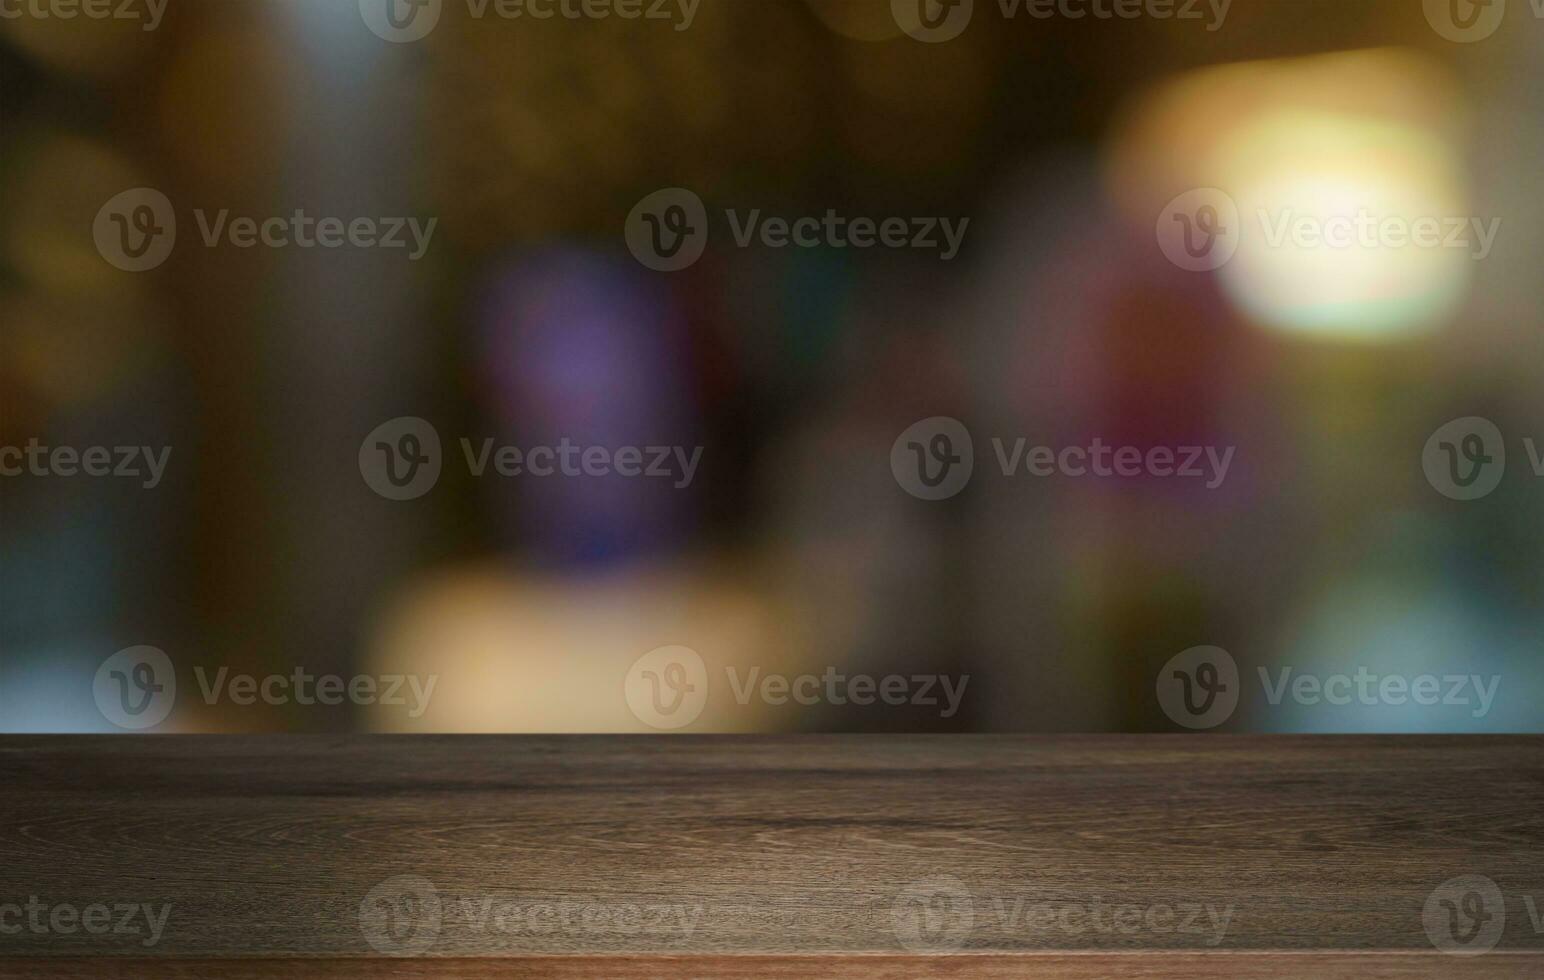 vacío madera mesa parte superior y difuminar de fuera puerta jardín antecedentes vacío de madera mesa espacio para texto márketing promoción. blanco madera mesa Copiar espacio para antecedentes foto